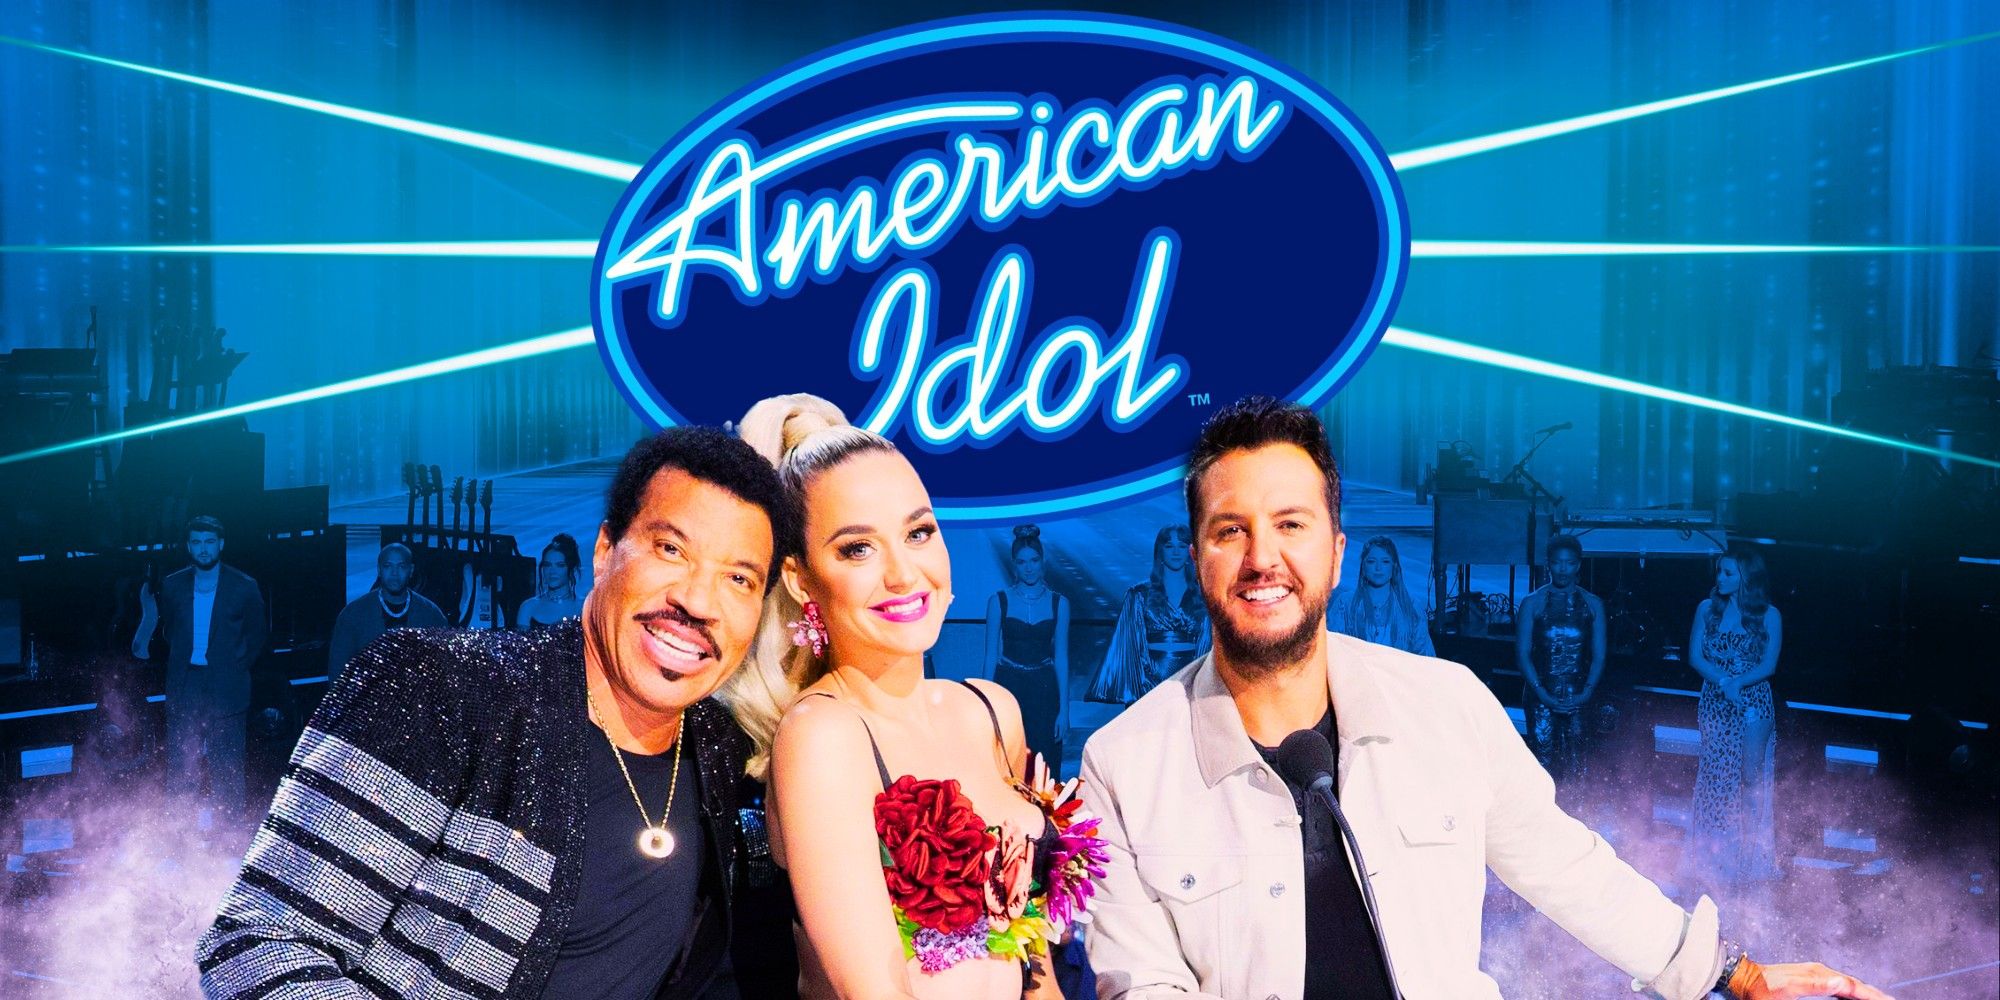 La temporada 22 de American Idol no debería haber cortado la ronda de duetos de la Semana de Hollywood